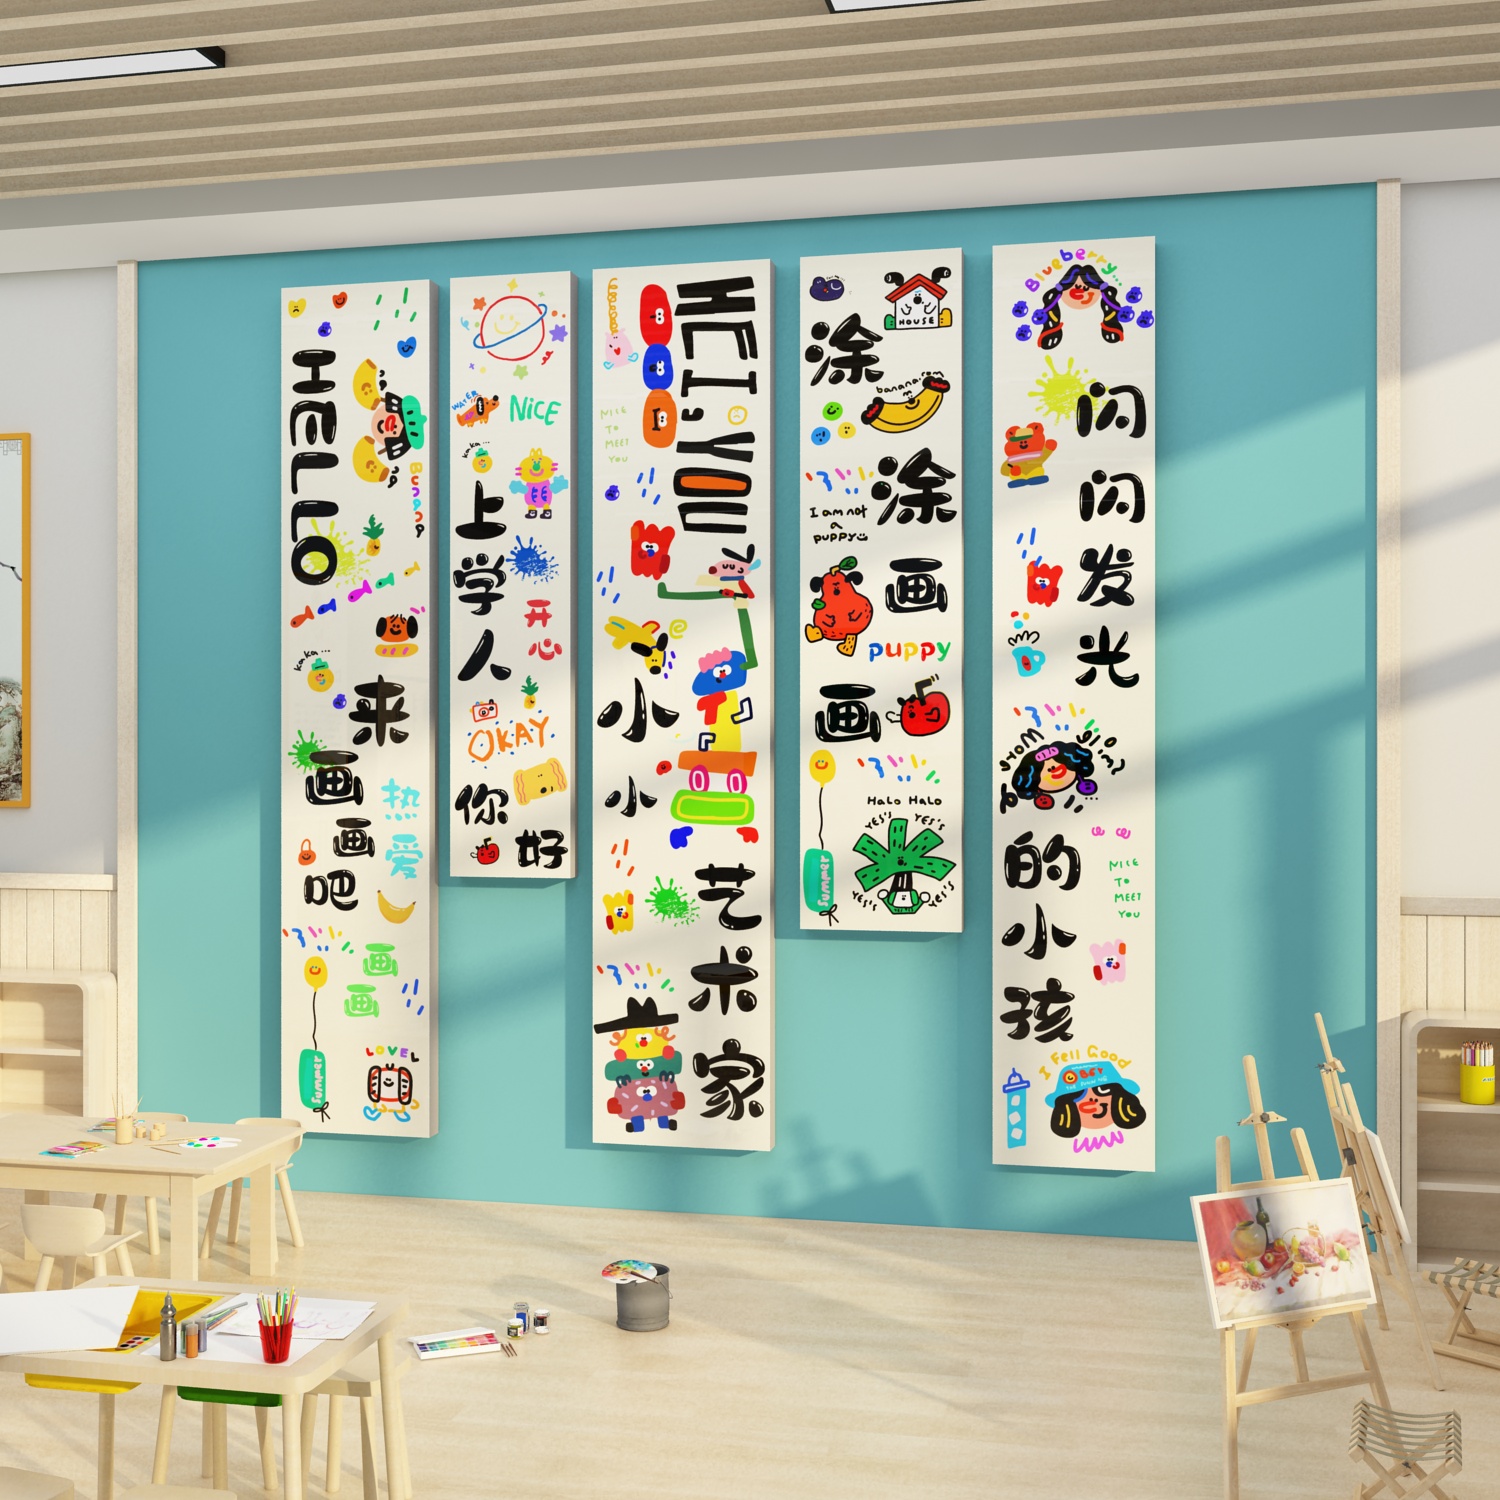 画室布置美术教室墙面装饰幼儿园美工室画展创意文化背景墙贴环创